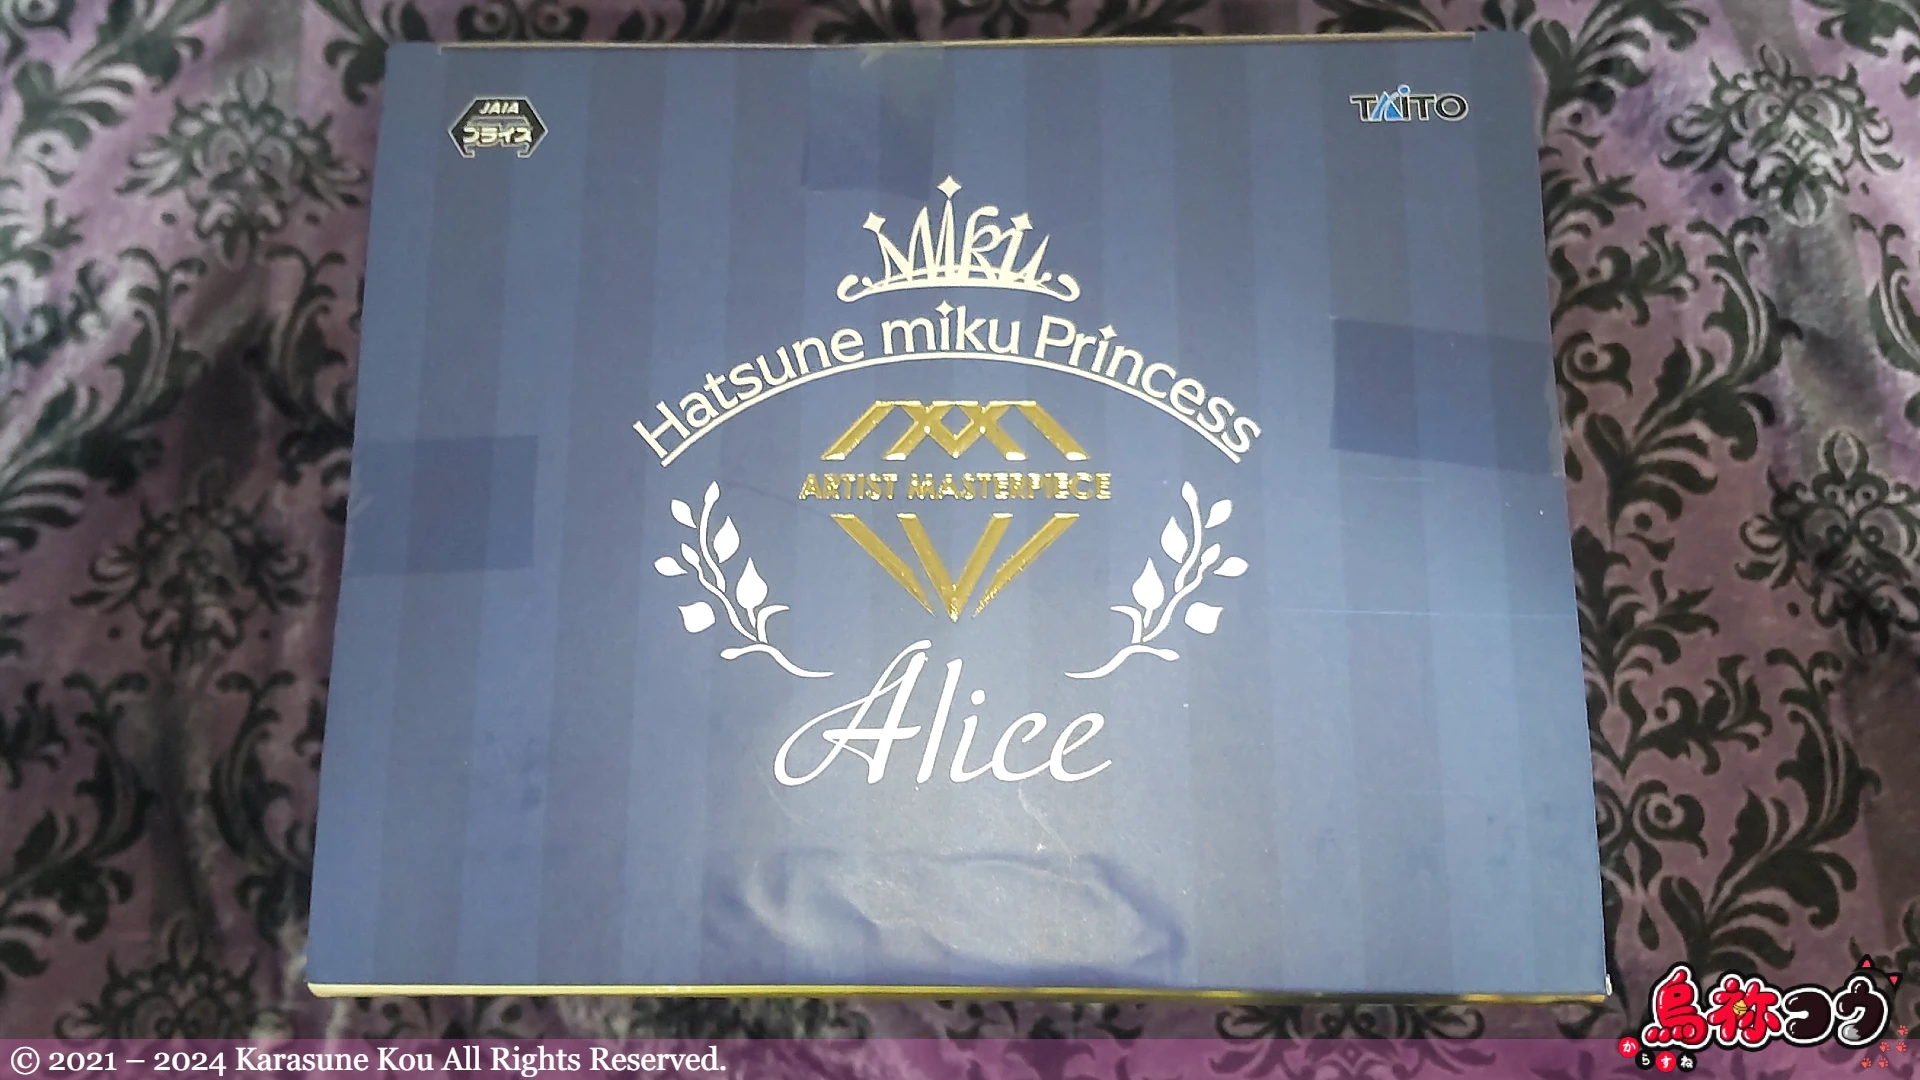 初音ミク Princess AMP フィギュア アリス ver. のパッケージの天面です